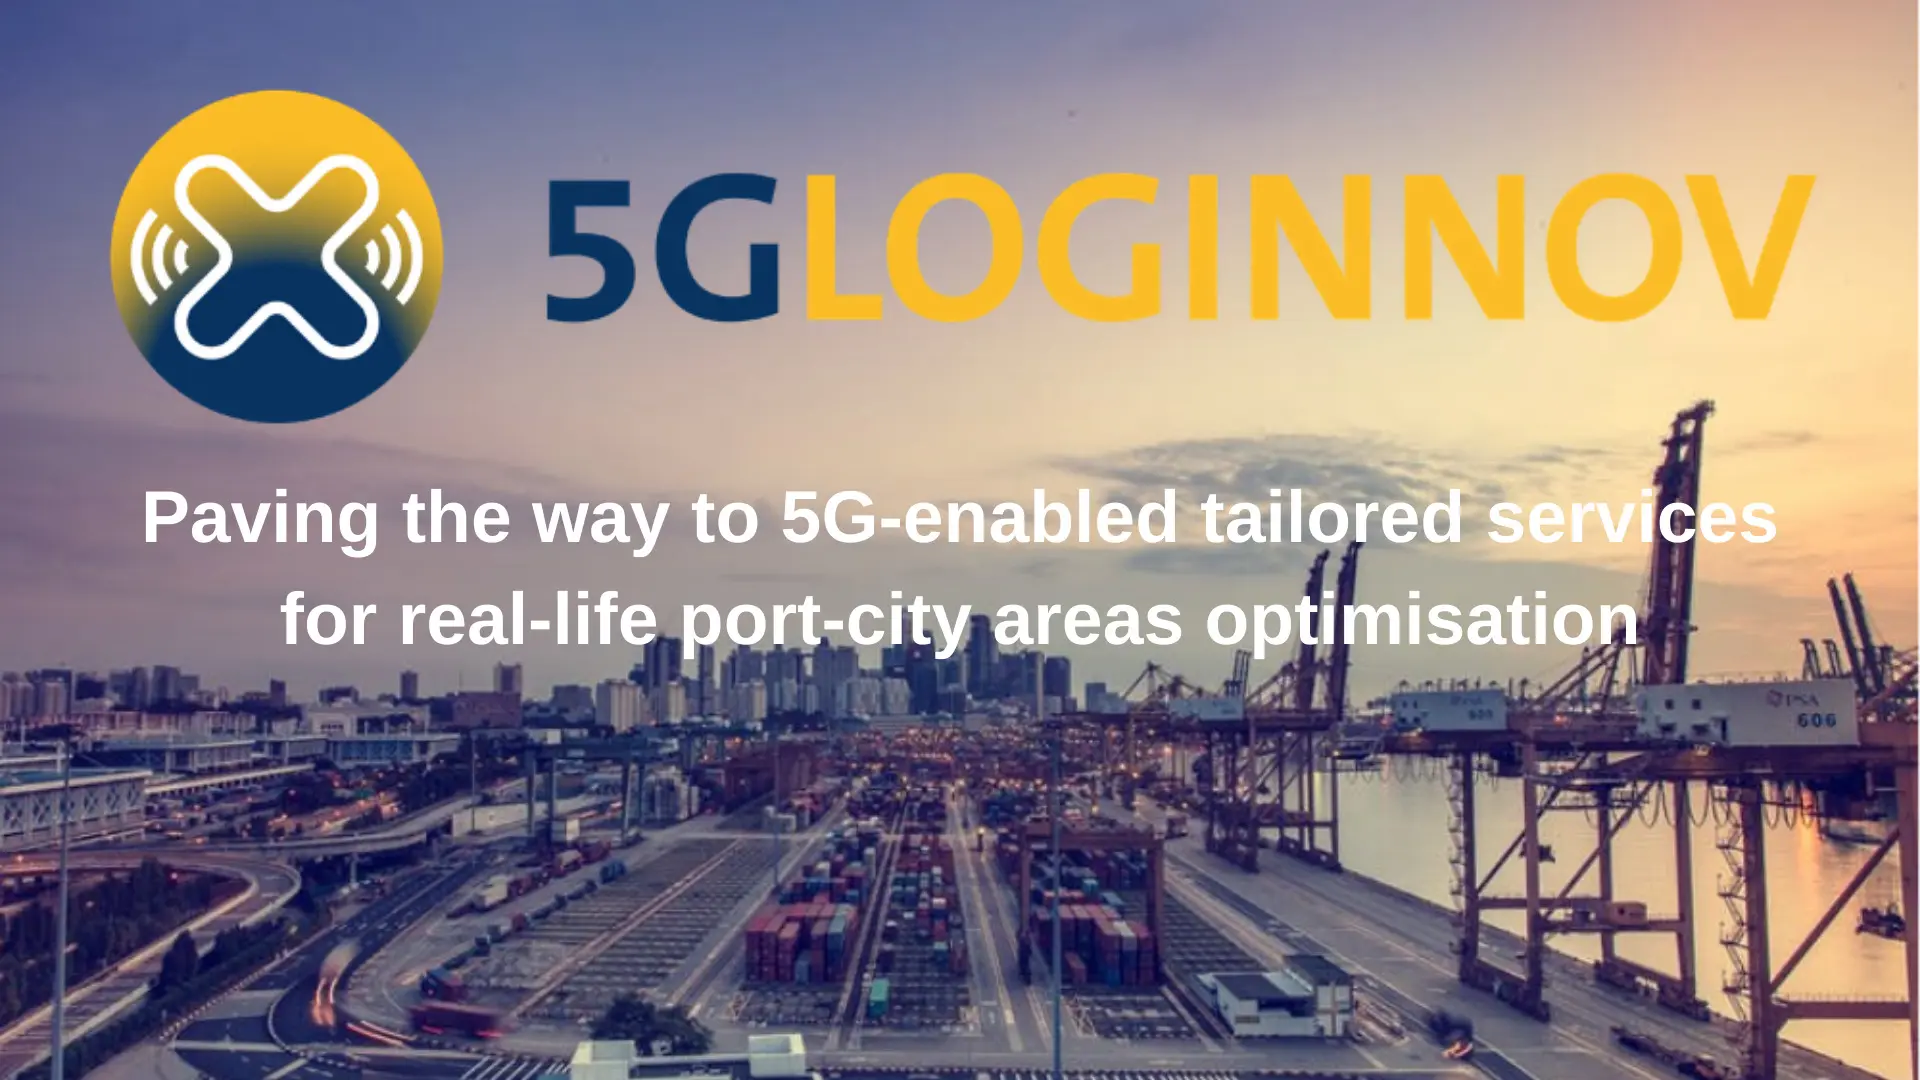 Vicomtech participa en el proyecto 5G Loginnov, basado en la innovación en logística y puertos a través de tecnologías 5G